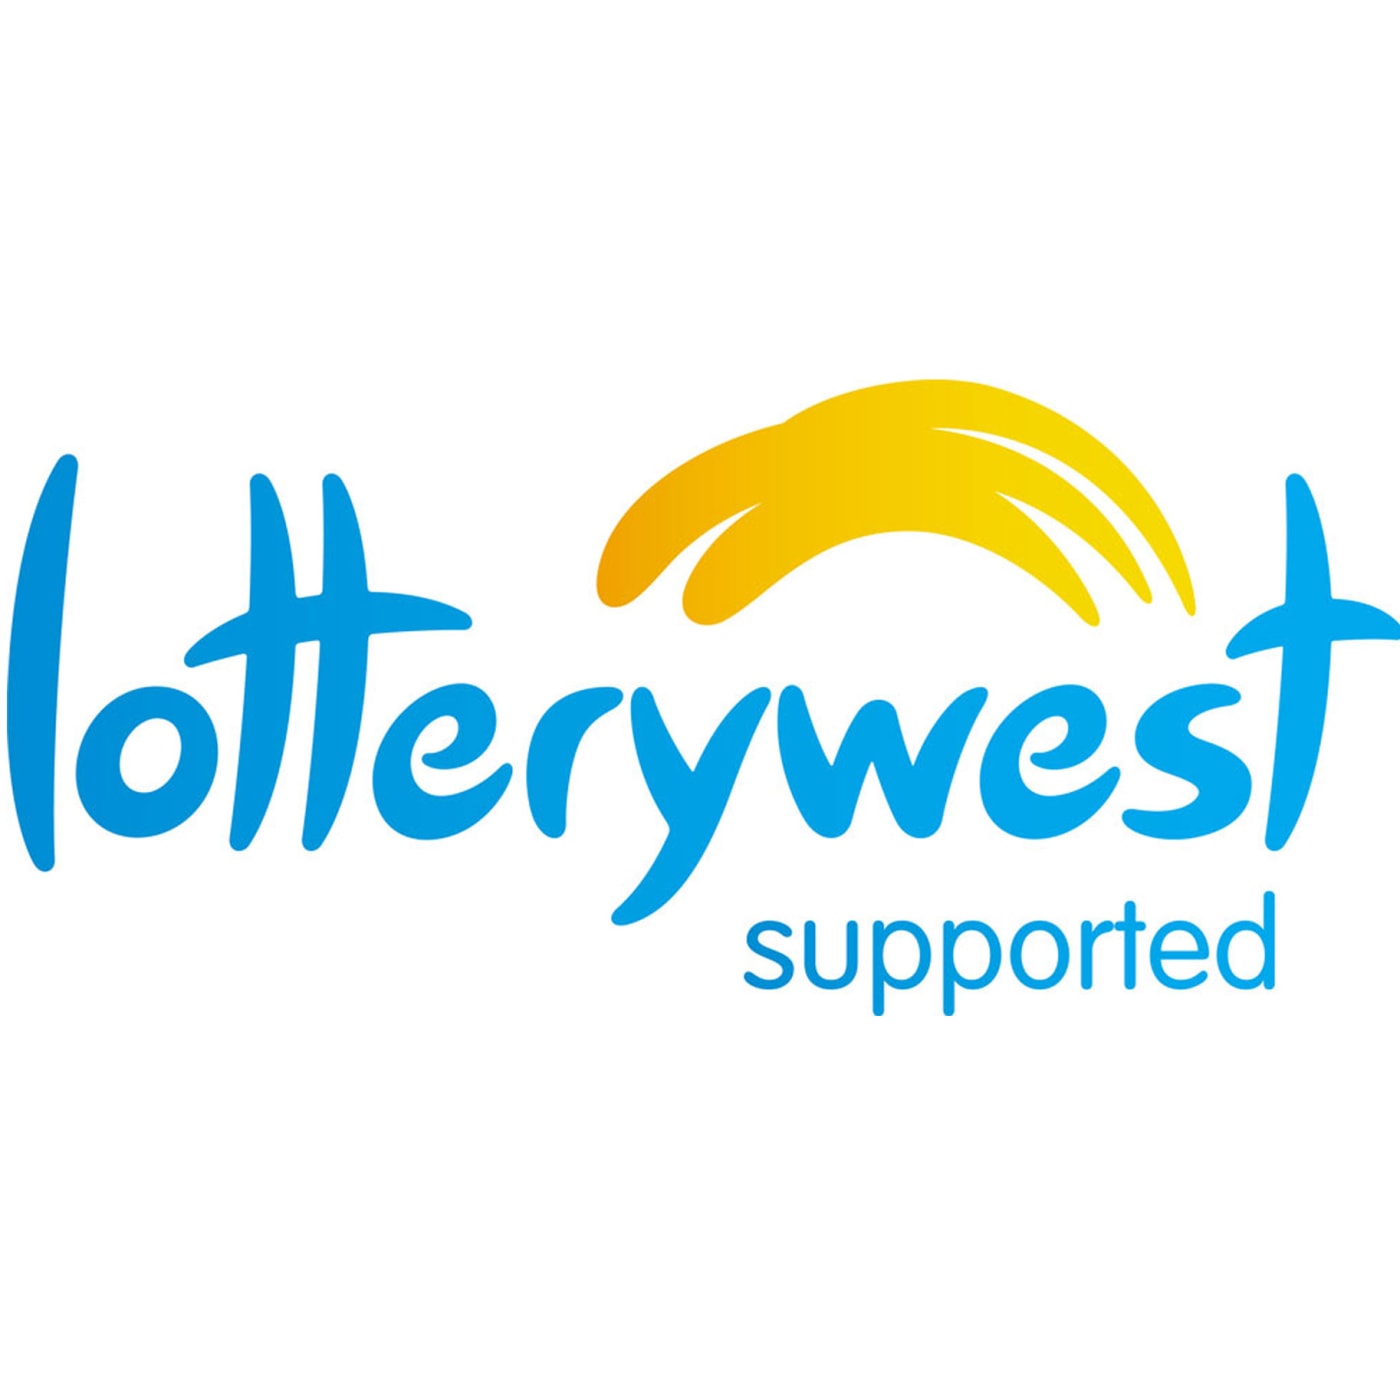 Lottery West logo